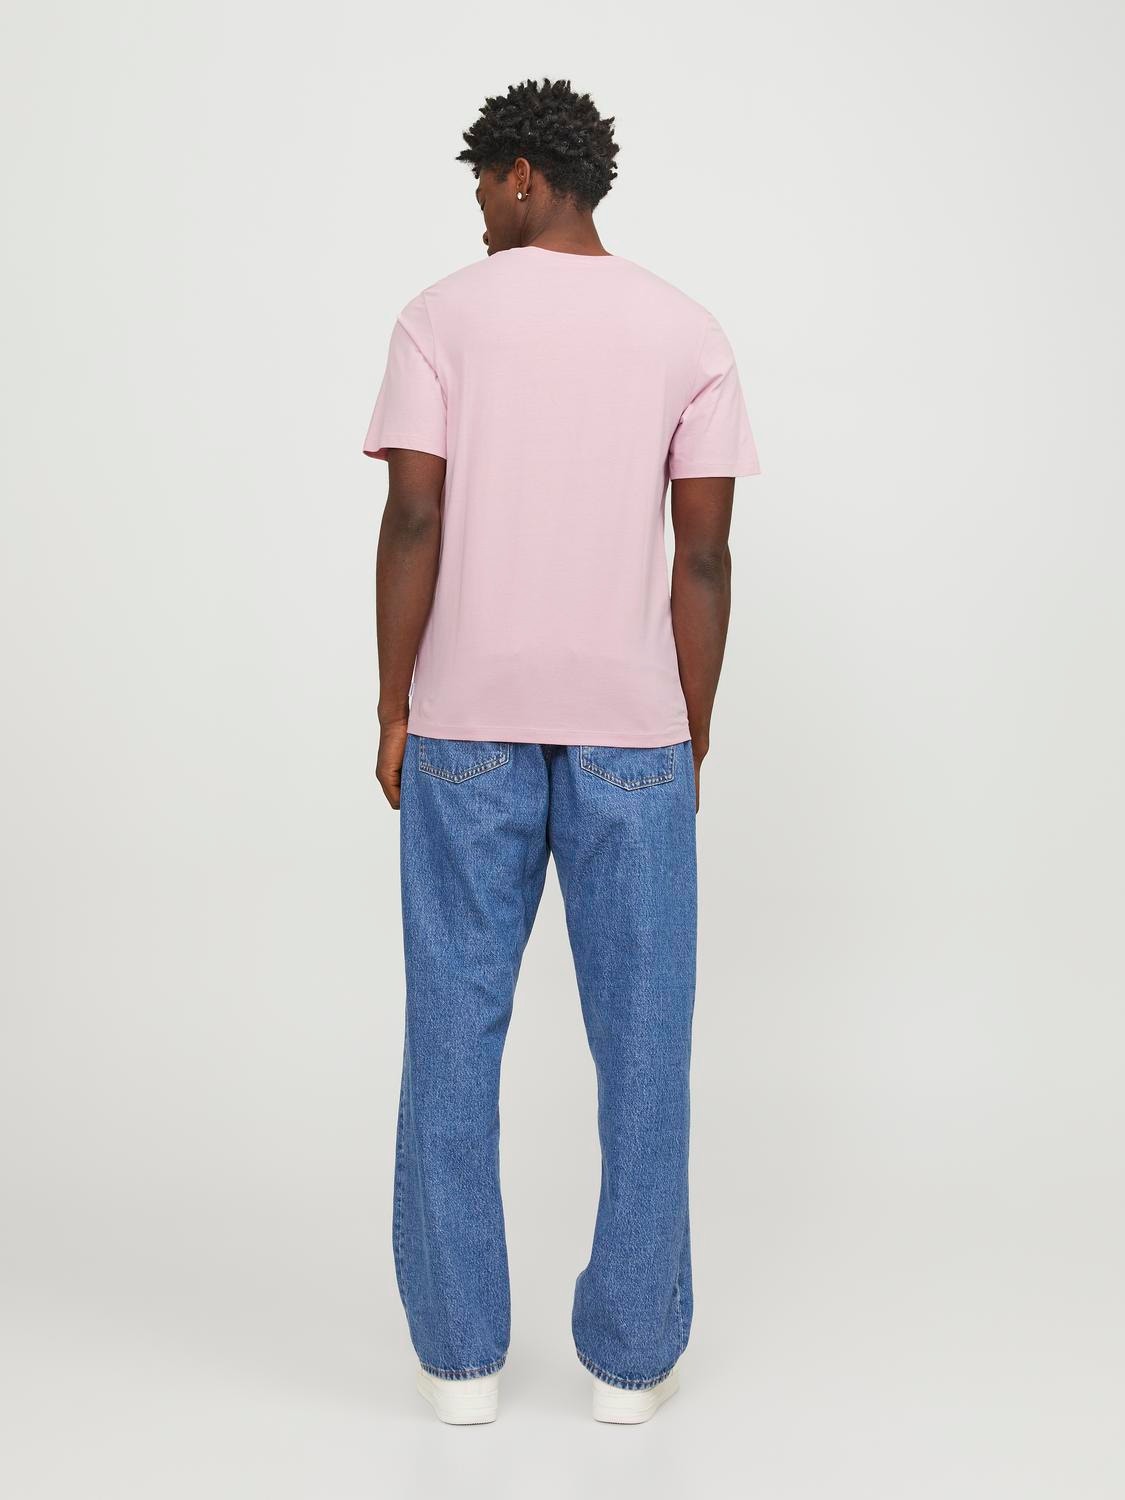 Jack & Jones Einfarbig Rundhals T-shirt -Pink Nectar - 12156101